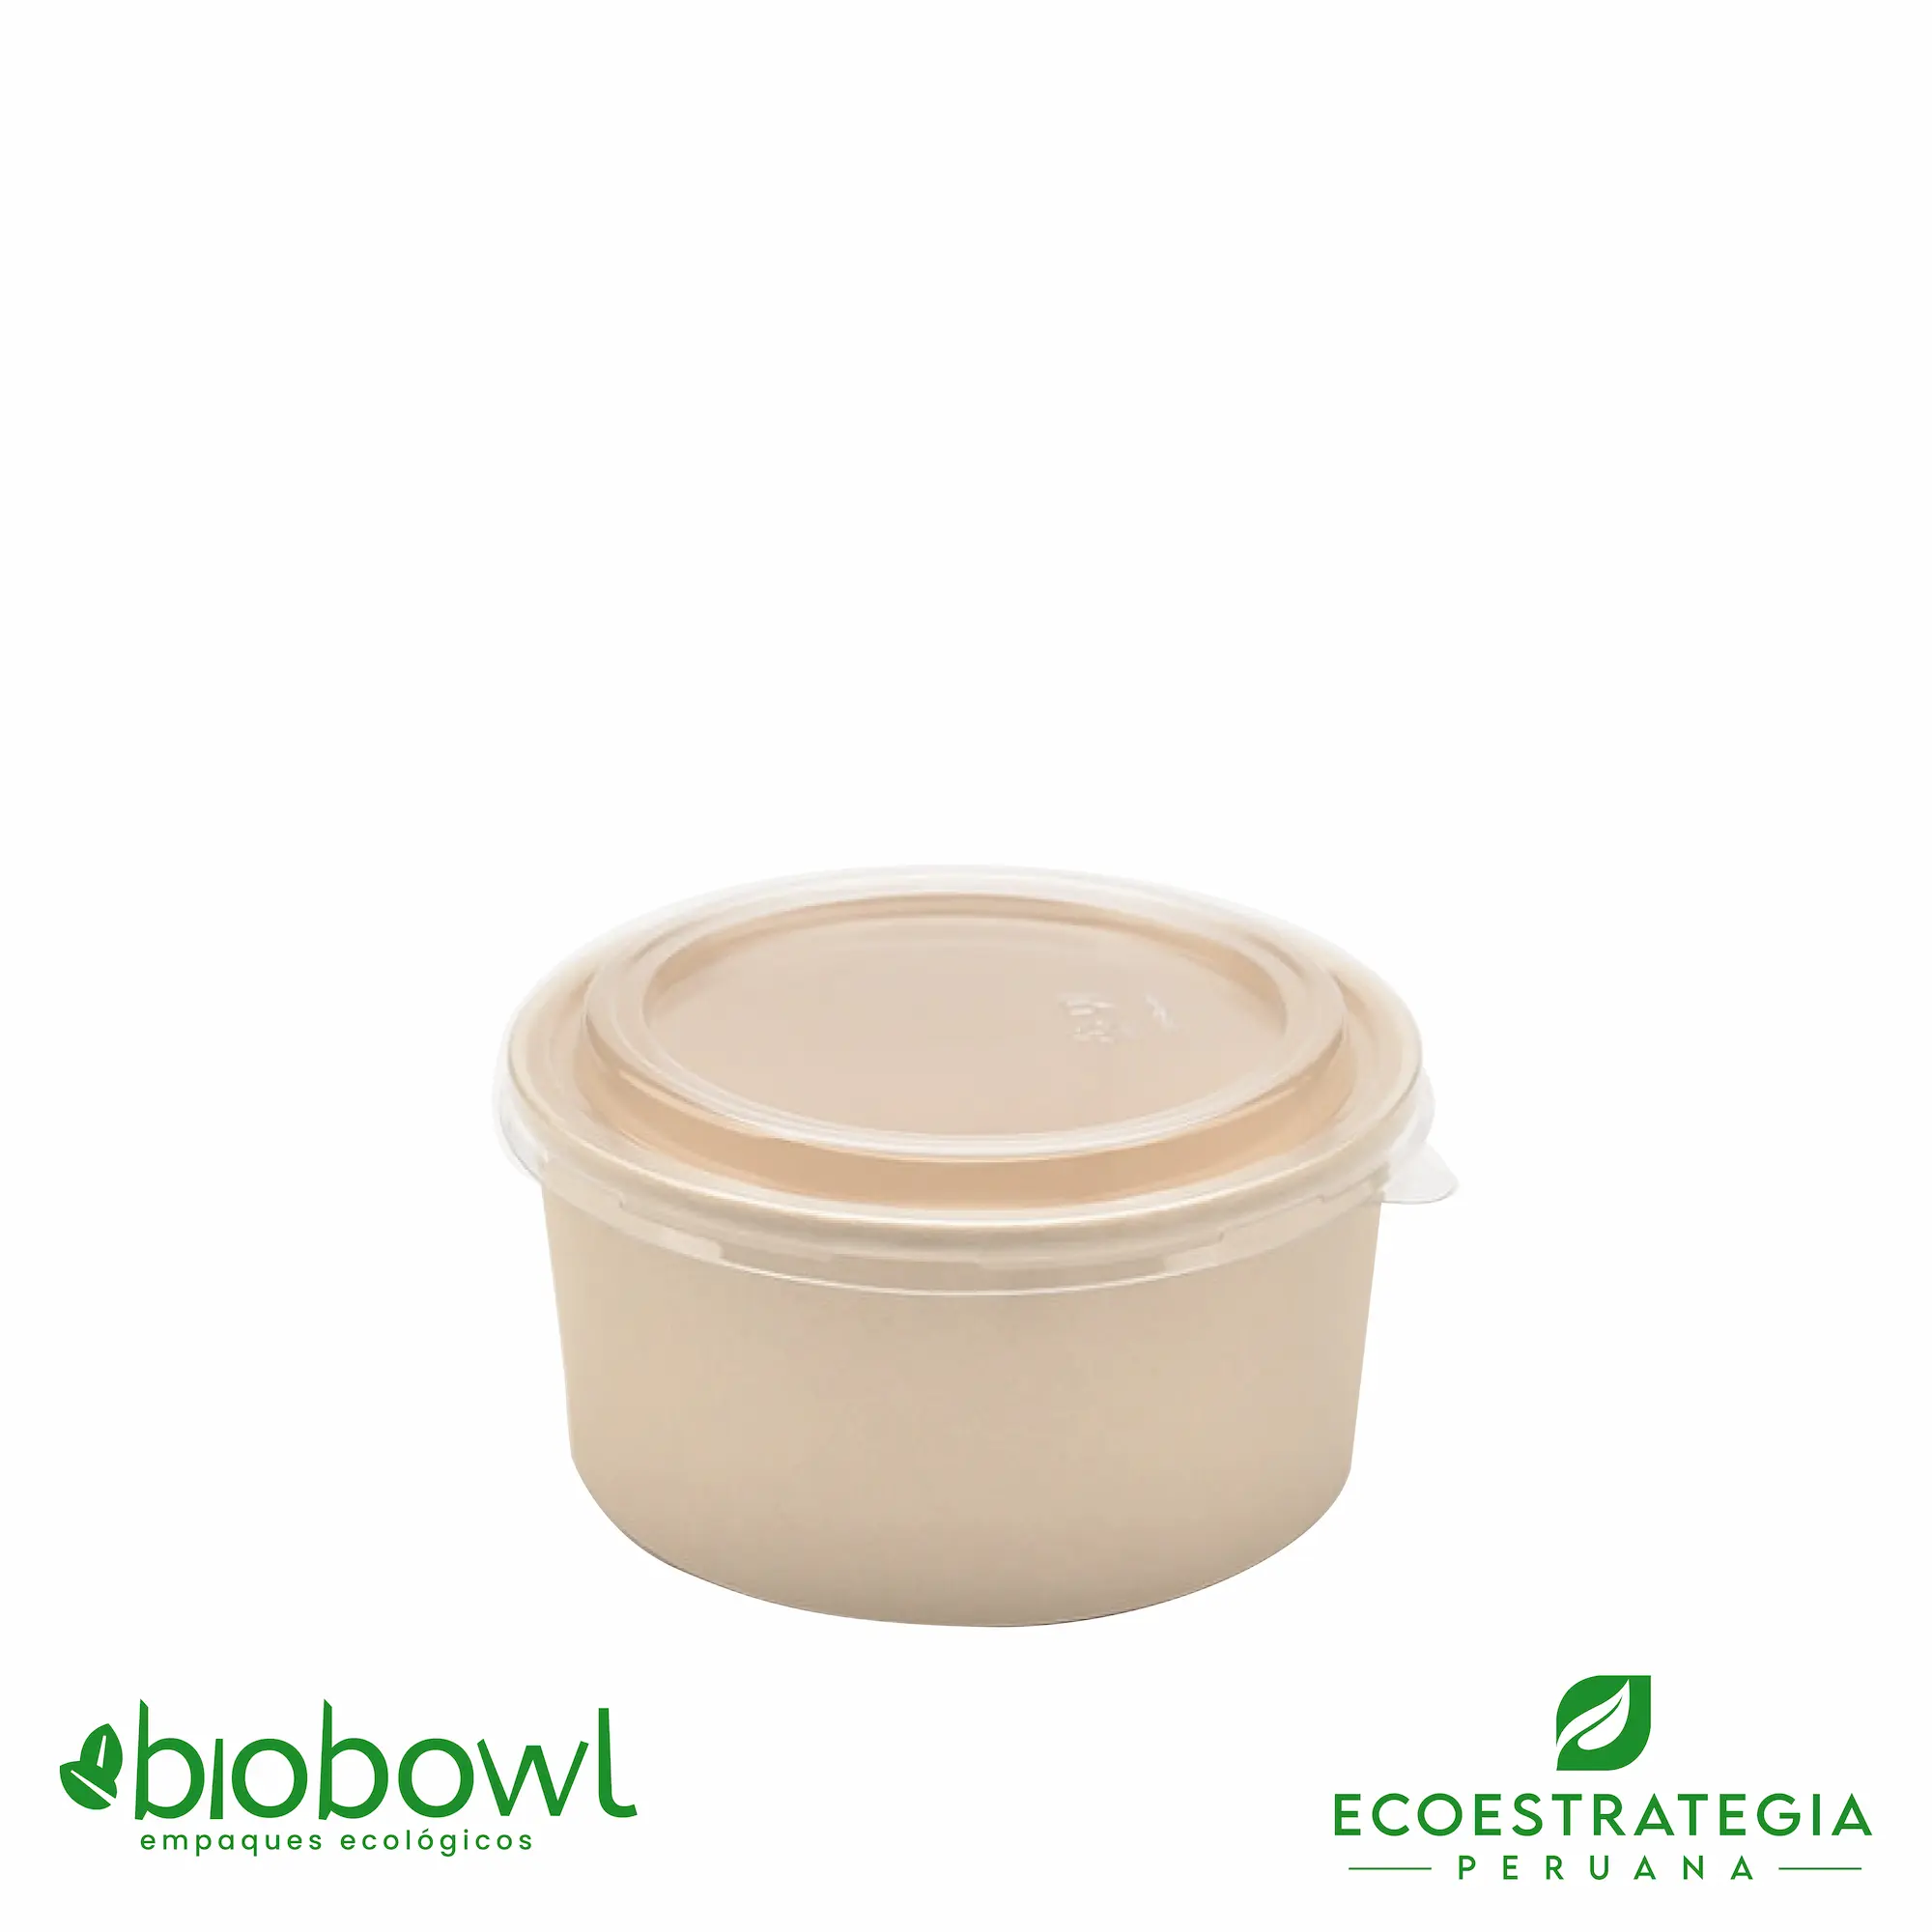 El bowl bambú biodegradable de 330ml o EP-330, es también conocido como bowl bamboo 330ml o bambú sopero 330ml, bambú salad 330ml, bowl para ensalada con tapa pet 330ml o sopero con fibra de bambú 330ml, bowl bambú ecologico, bowl bambú reciclable, bowl descartable, bowl bambu postres 330ml, bowl bambu helados 330ml